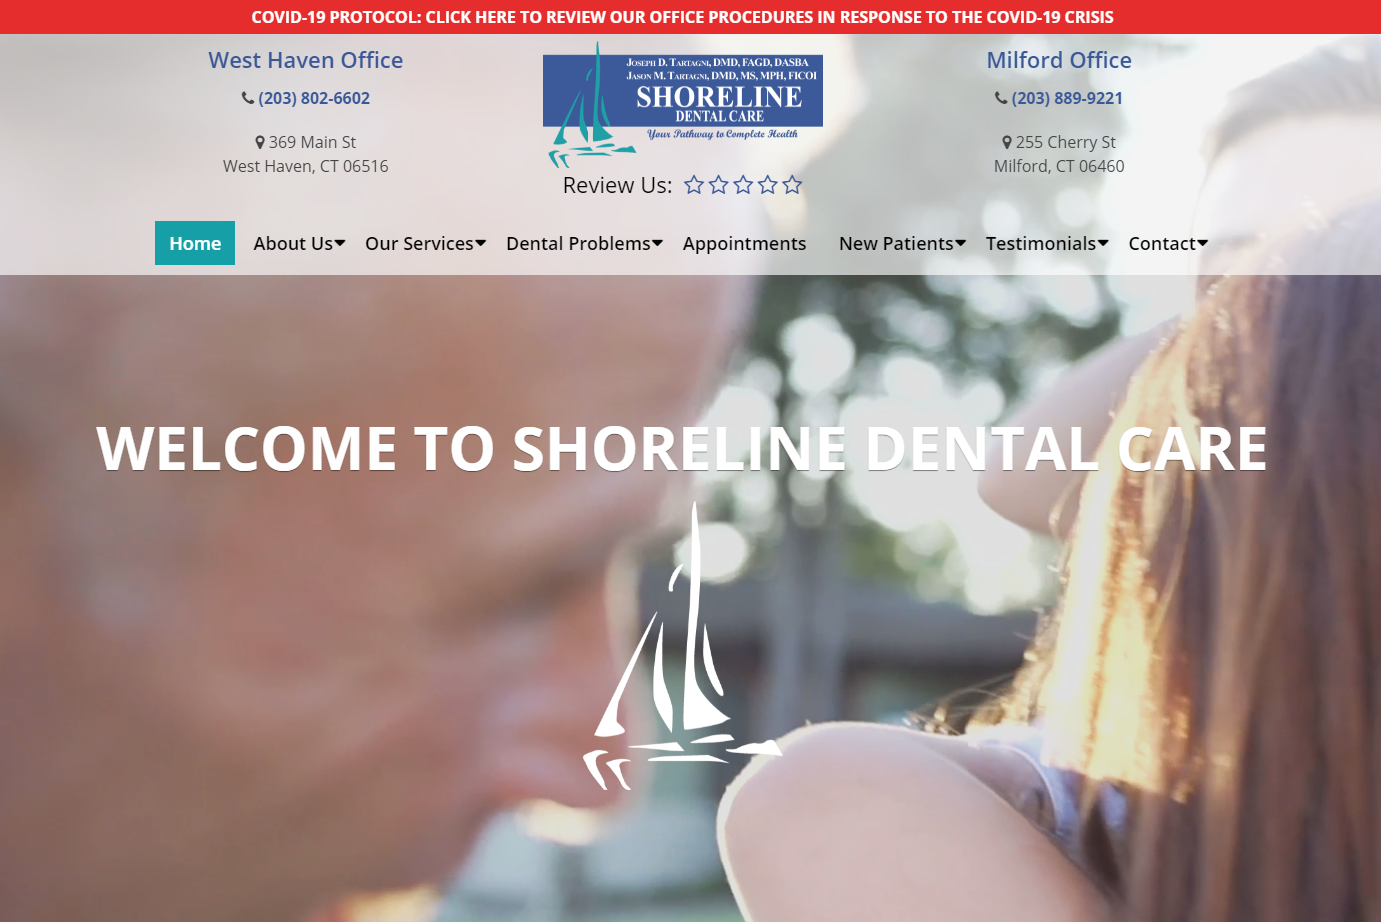 Shoreline Dental Care